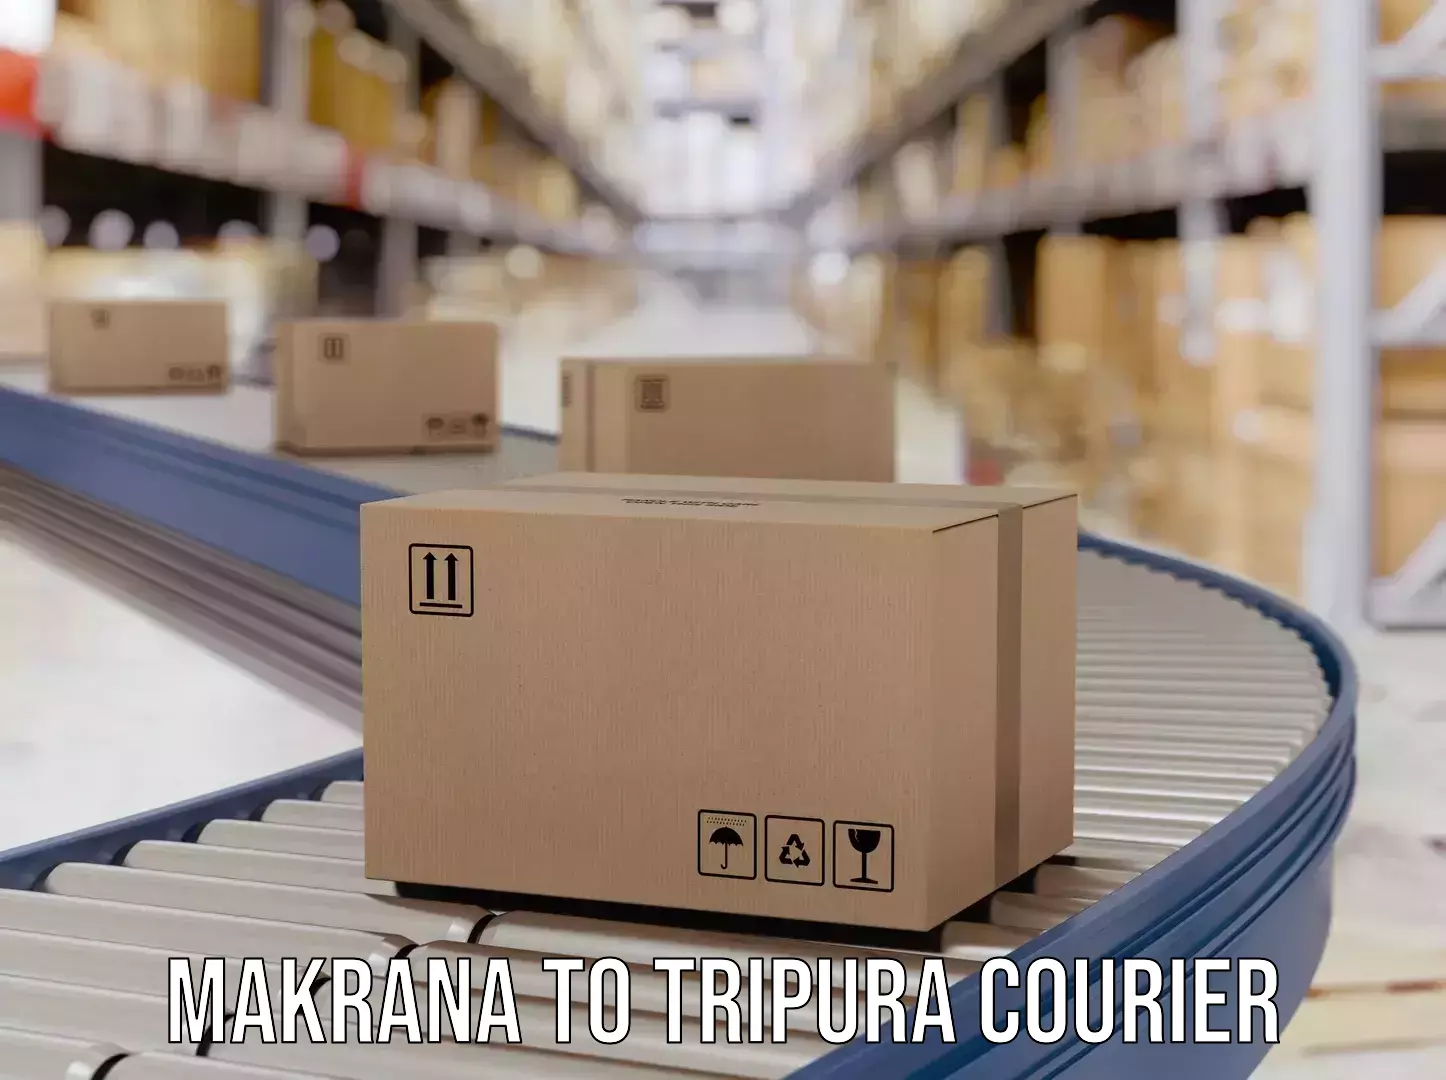 Courier service innovation Makrana to Aambasa